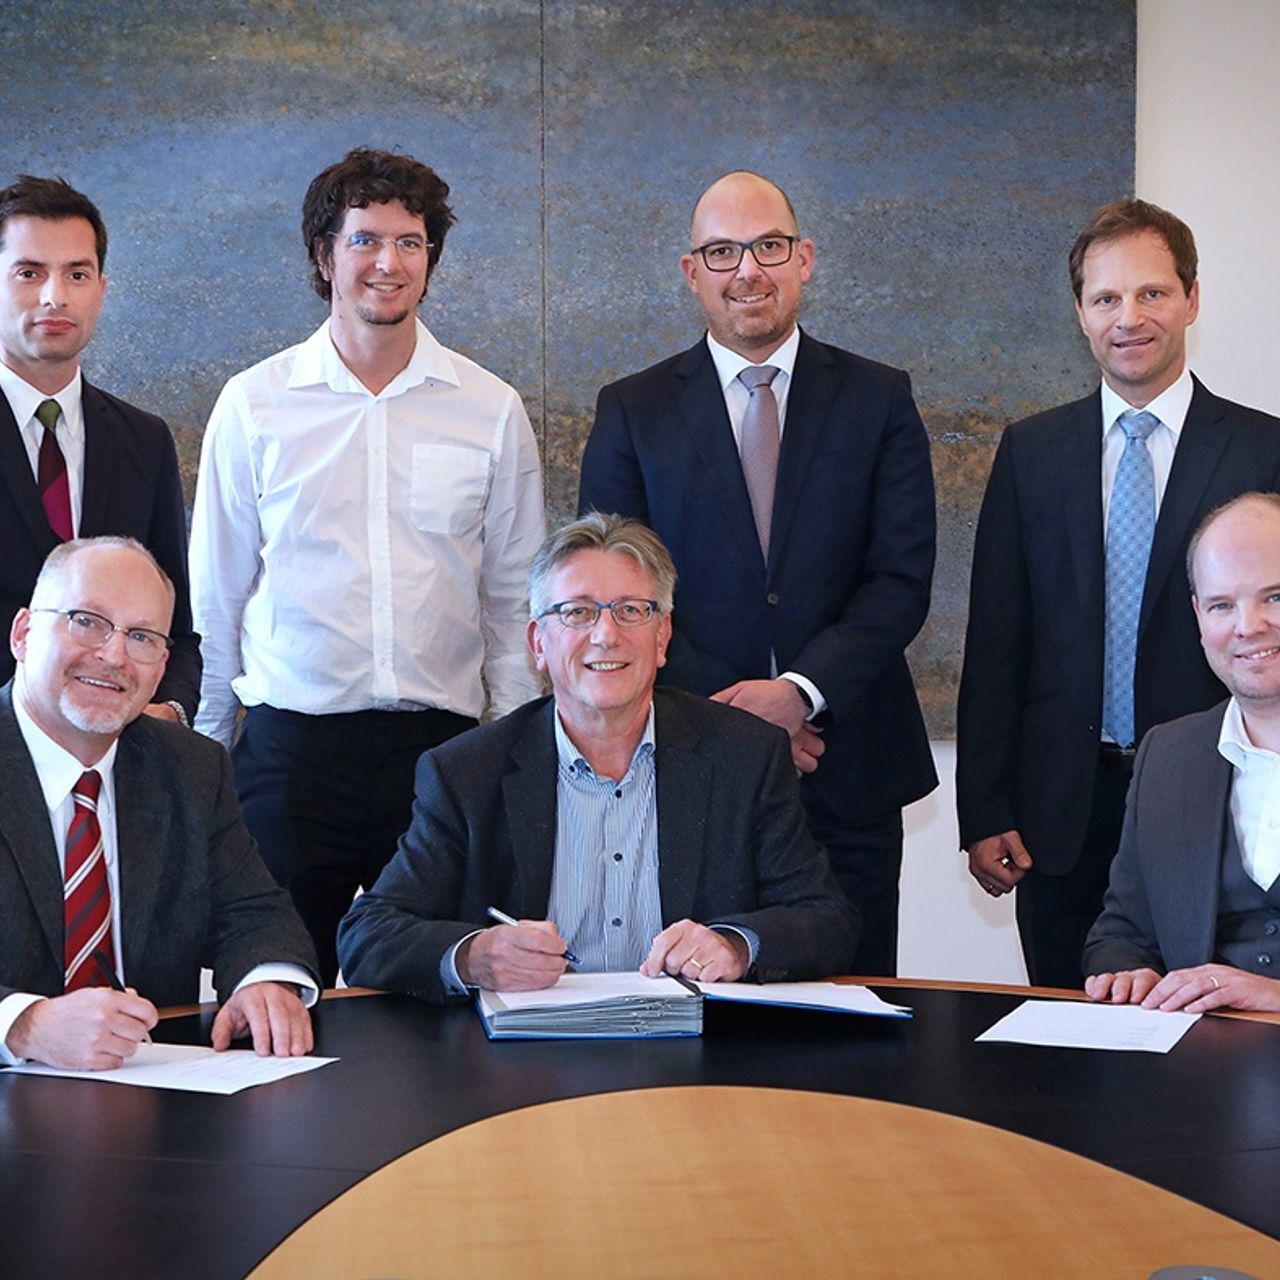 La sottoscrizione della collaborazione fra Innosuisse, l'Agenzia svizzera per la promozione dell'innovazione, e l'Ufficio degli Affari Economici del Liechtenstein